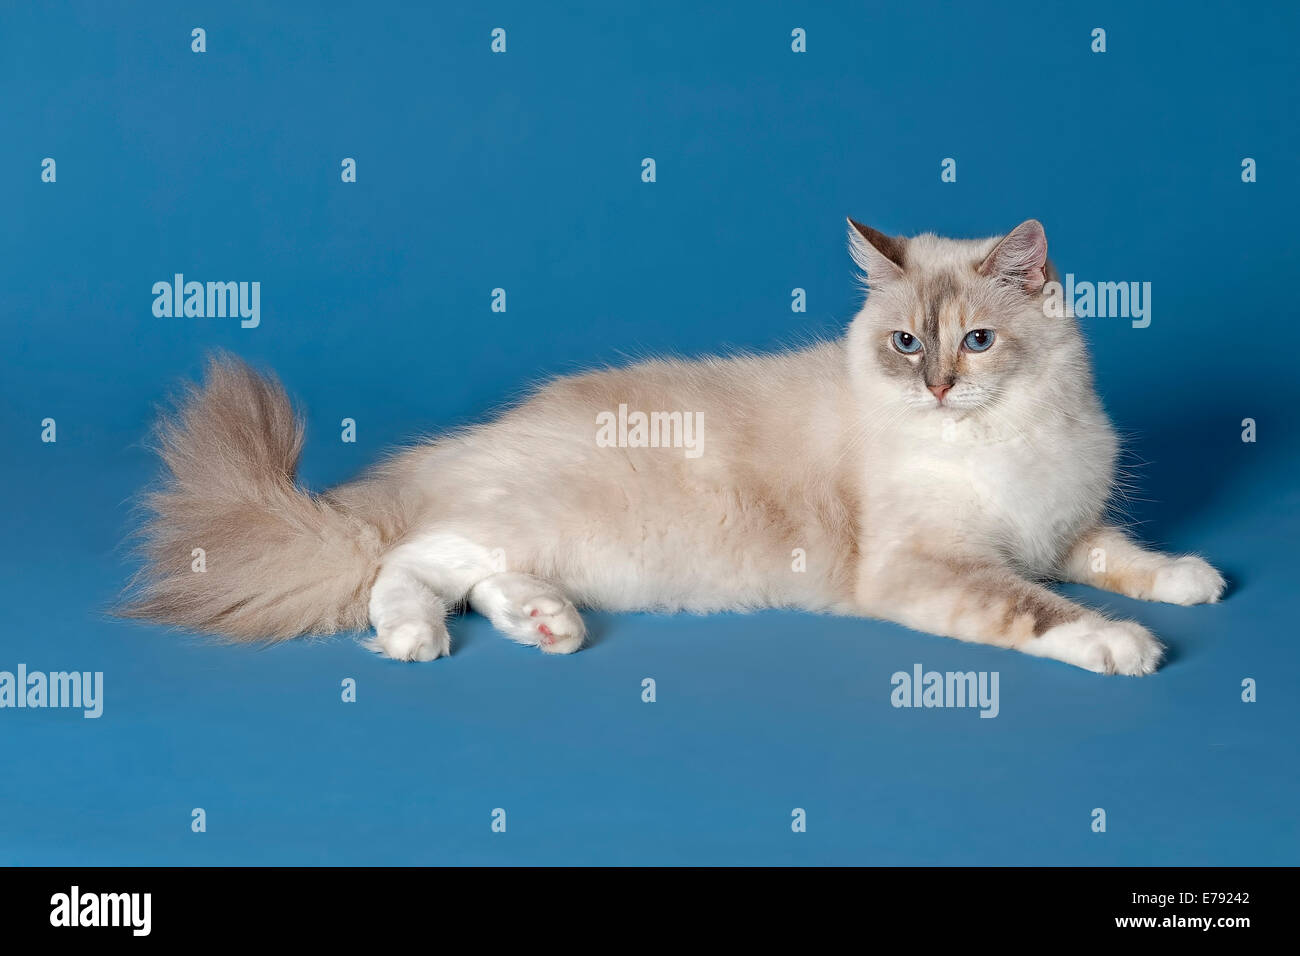 skrivestil gift Vedligeholdelse Blue mitted ragdoll cat hi-res stock photography and images - Alamy